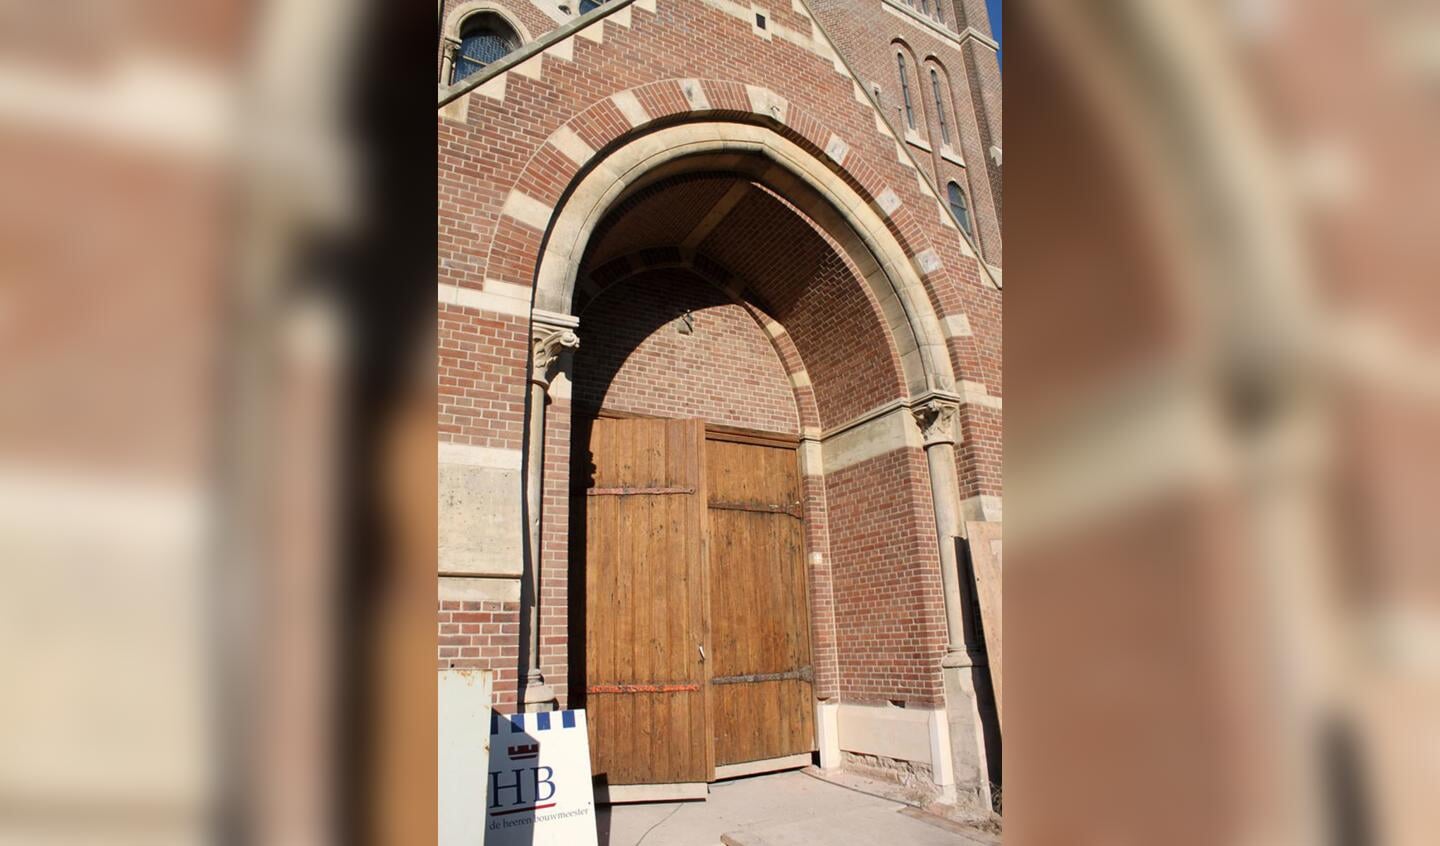 Eigenaar Stichting Woonzorg Nederland is volop bezig met de restauratie van de Heilig Hartkerk foto Raymond Tillieu